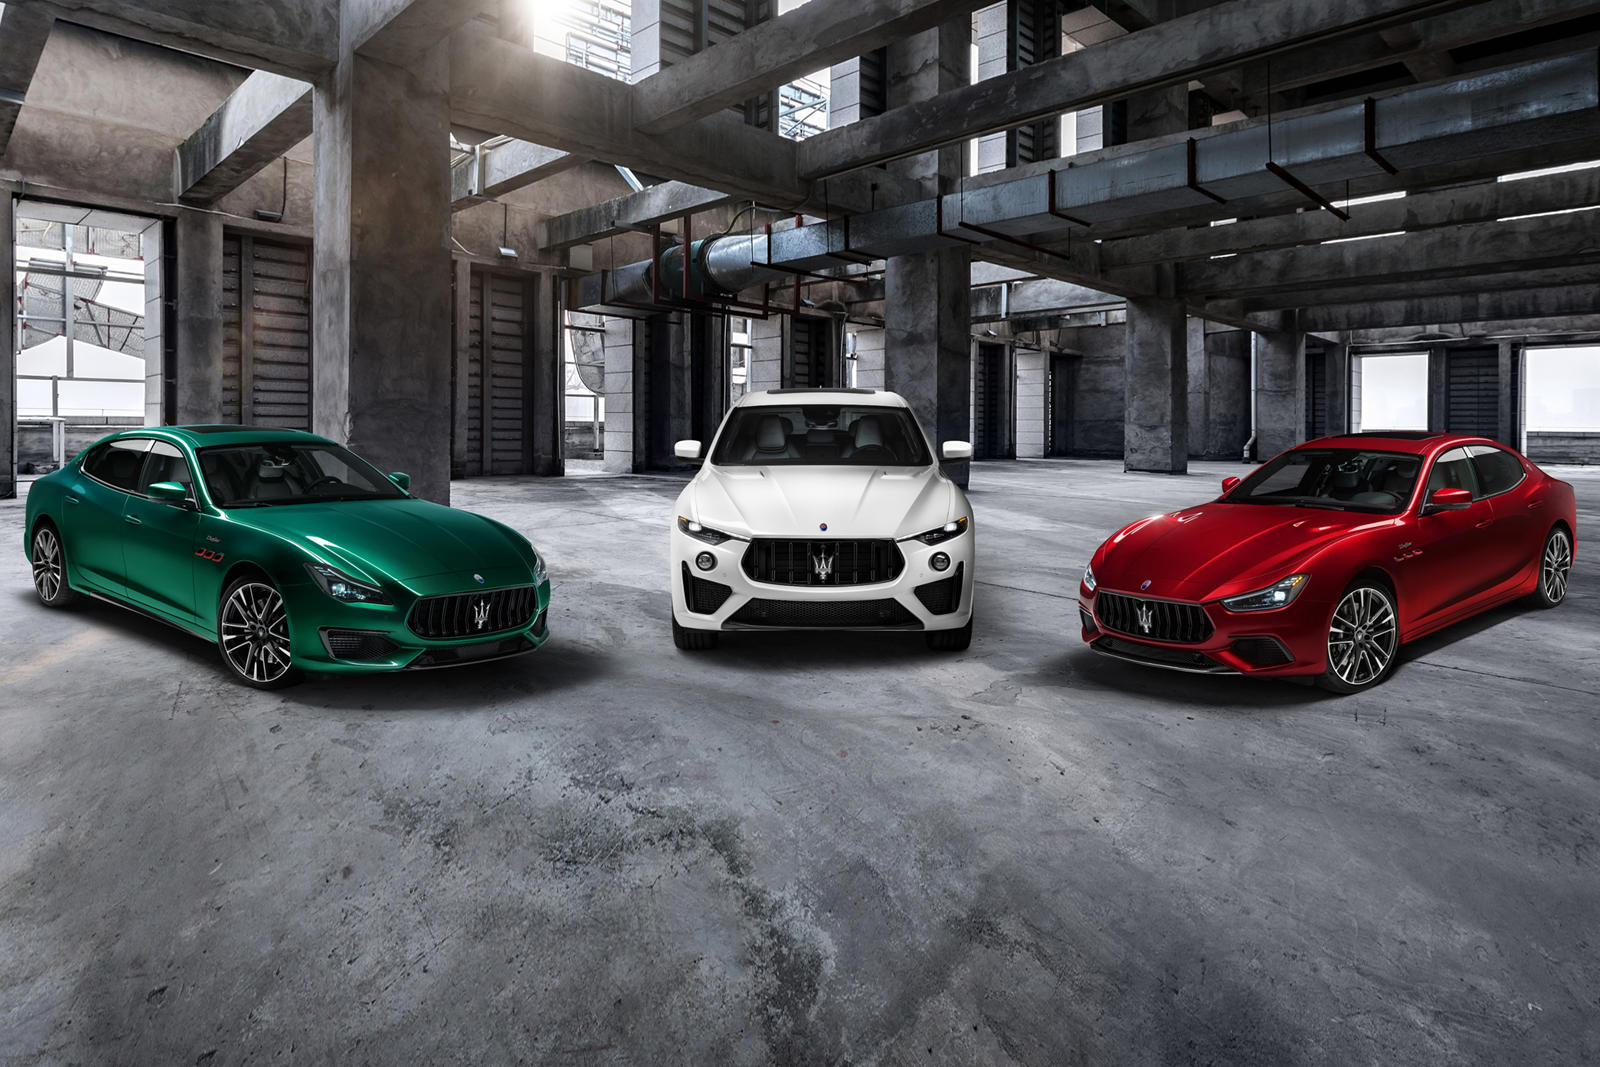 Еще в 2018 году Maserati Levante Trofeo был запущен как самый мощный внедорожник итальянского автопроизводителя, оснащенный двигателем V8 от Ferrari с мощностью 580 лошадиных сил. Теперь, после тизера на прошлой неделе, Maserati Ghibli и Maserati Qua